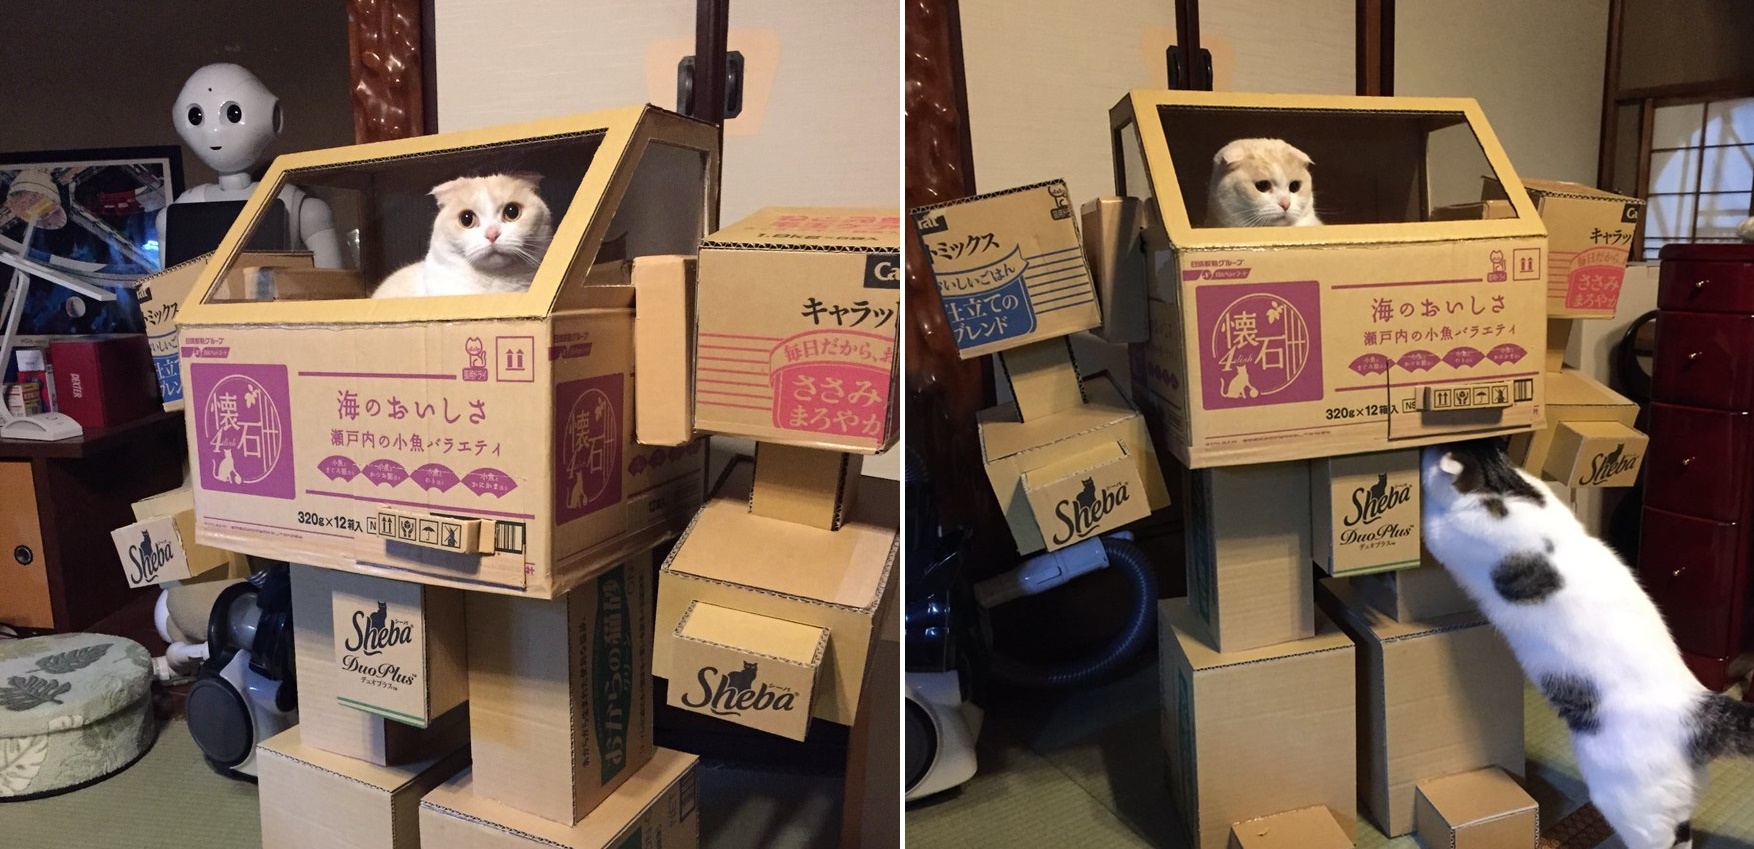 คู่รักชาวญี่ปุ่น ออกแบบ “หุ่นยนต์แมวลังกระดาษ” และก็หลอกเหมียวมาเล่นได้จริงๆ!!